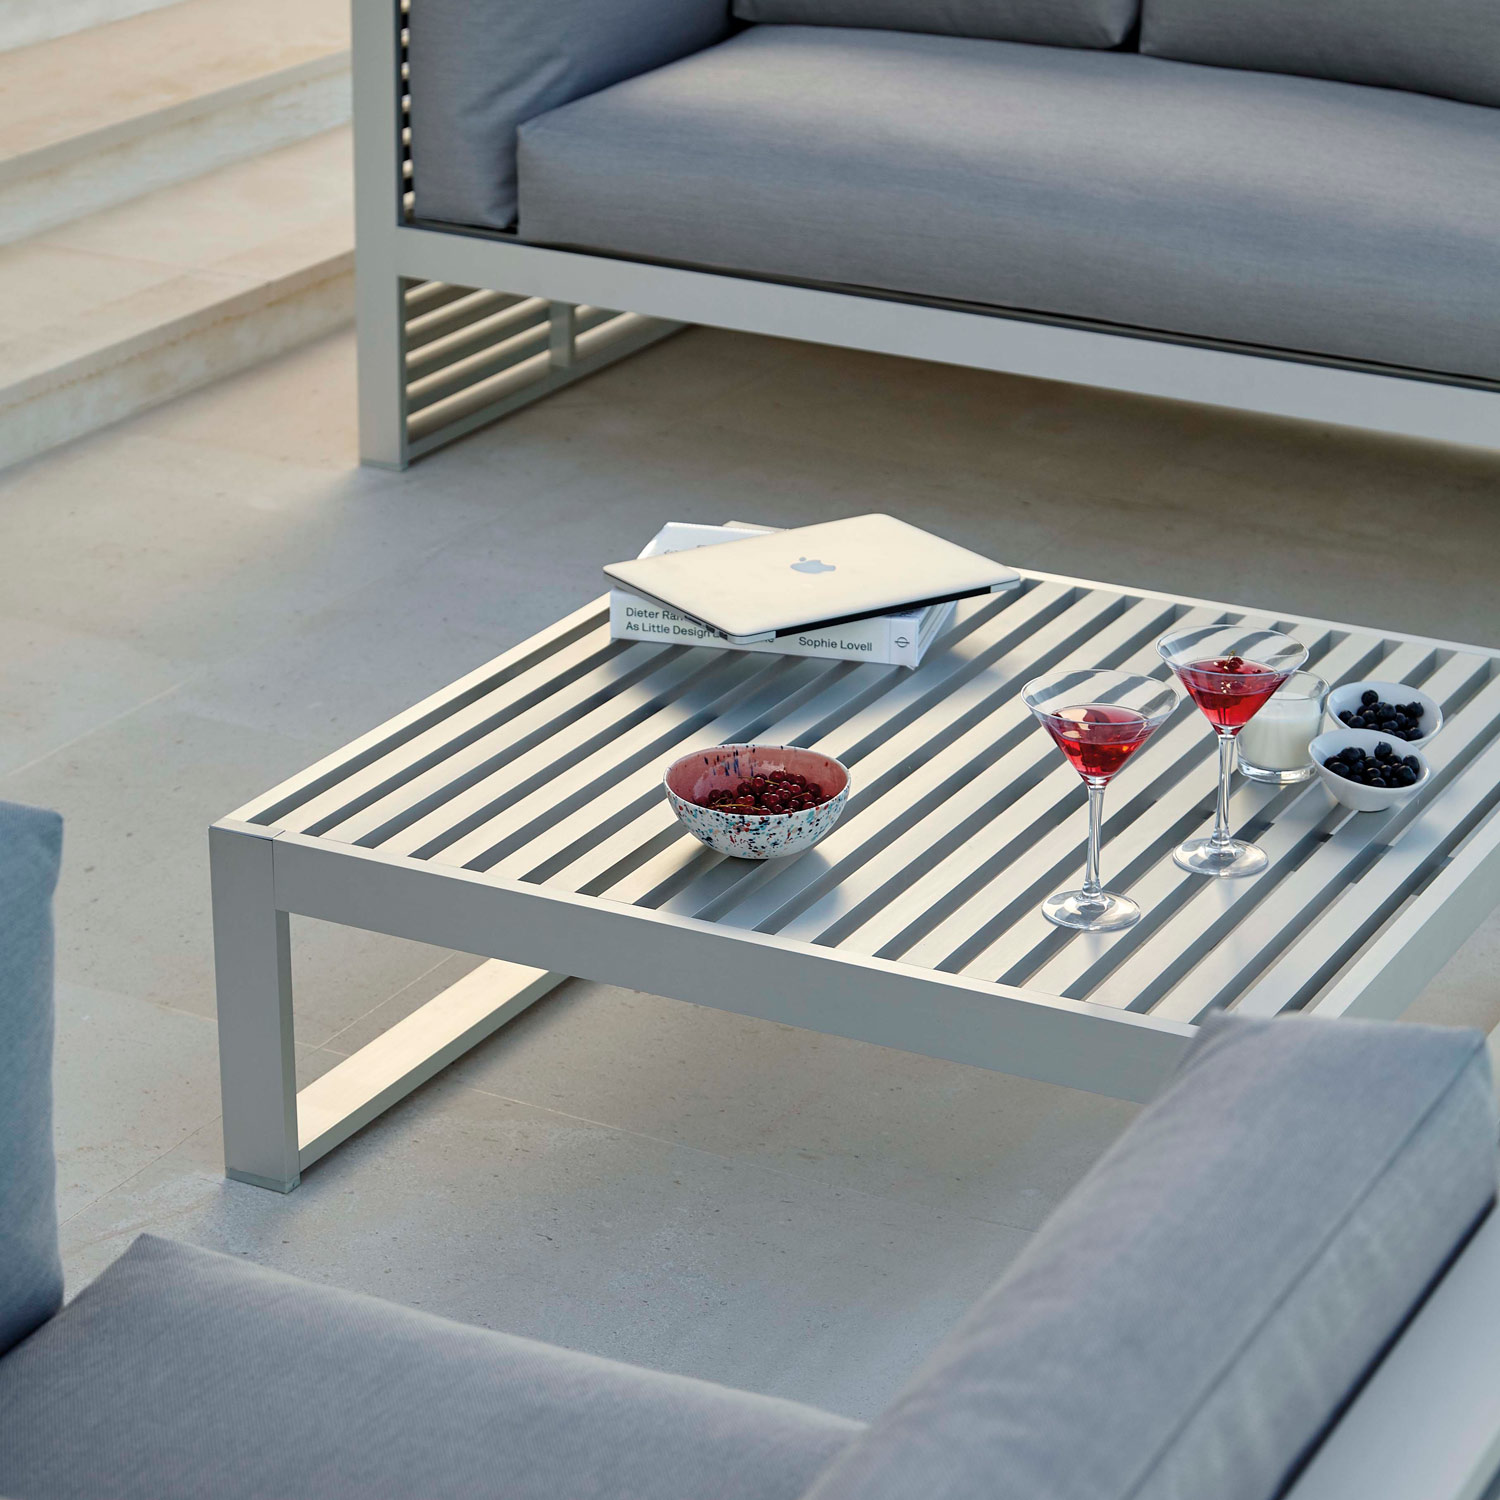 DNA luksuriøse møbler med det lave sofabord i anodiseret aluminium fra Gitz Design og Gandia Blasco